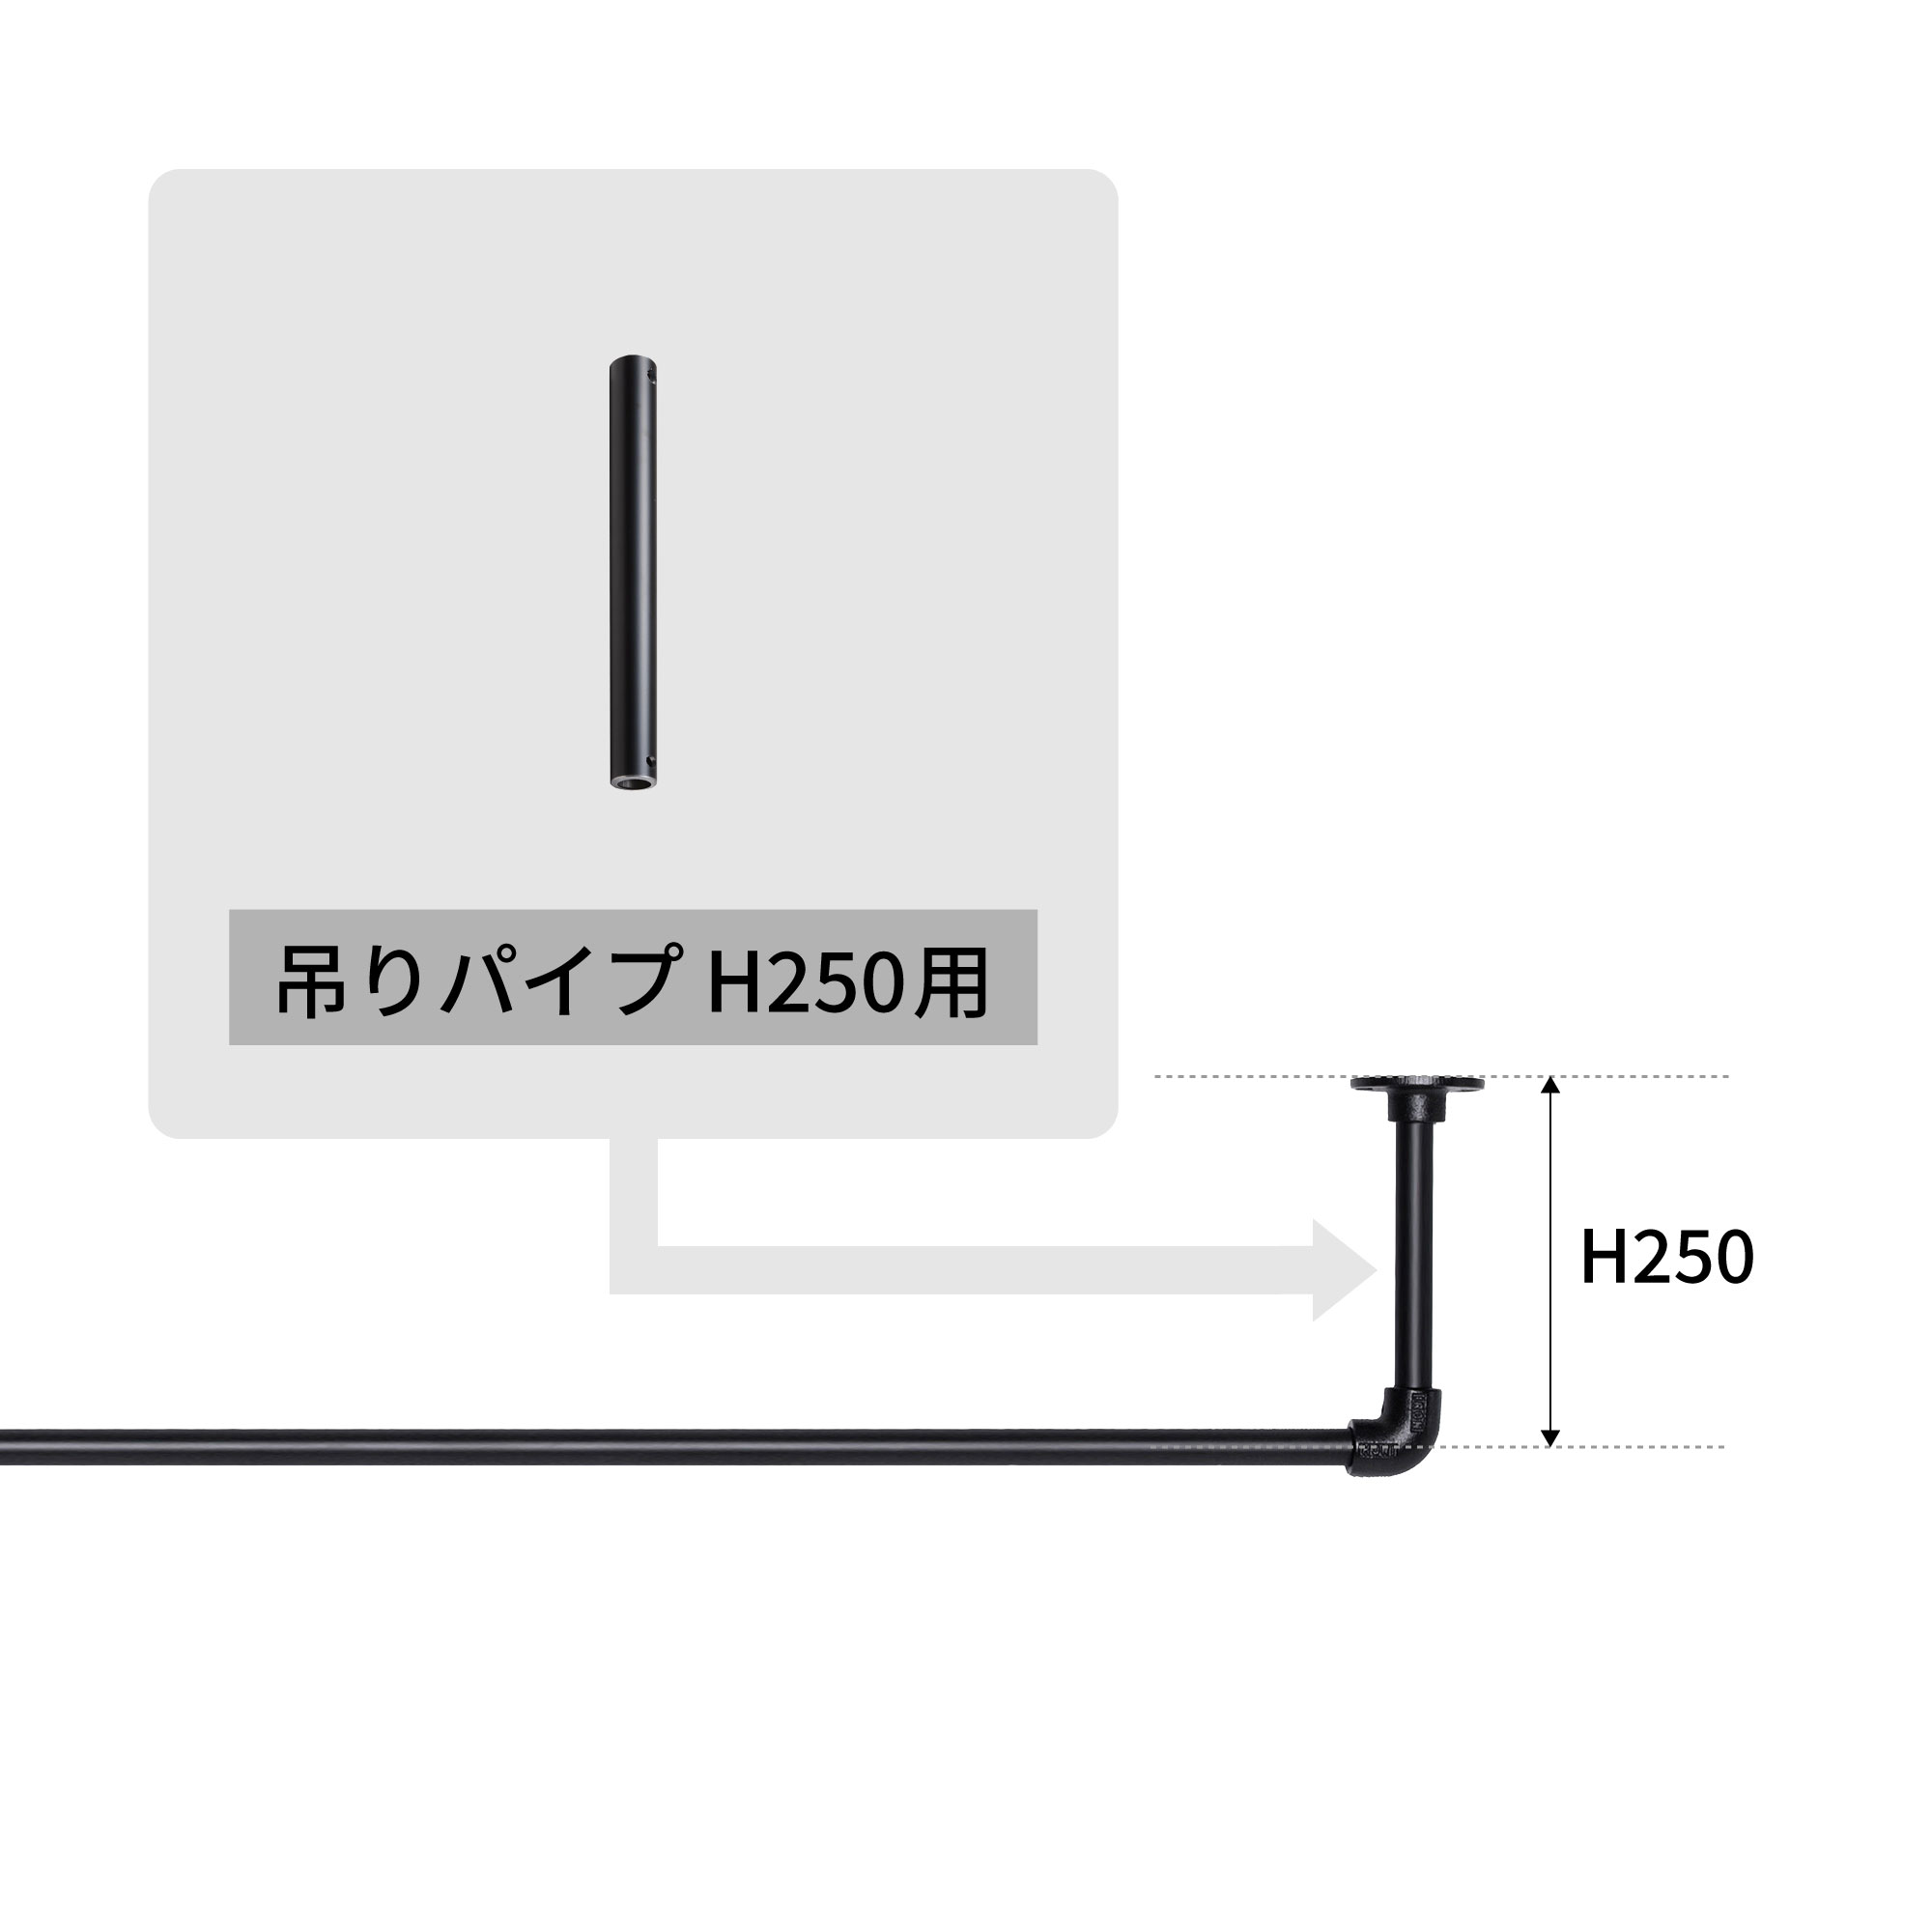 アイアンハンガーパイプ 吊りパイプ H250用 ホワイト PS-HB008-46-G141